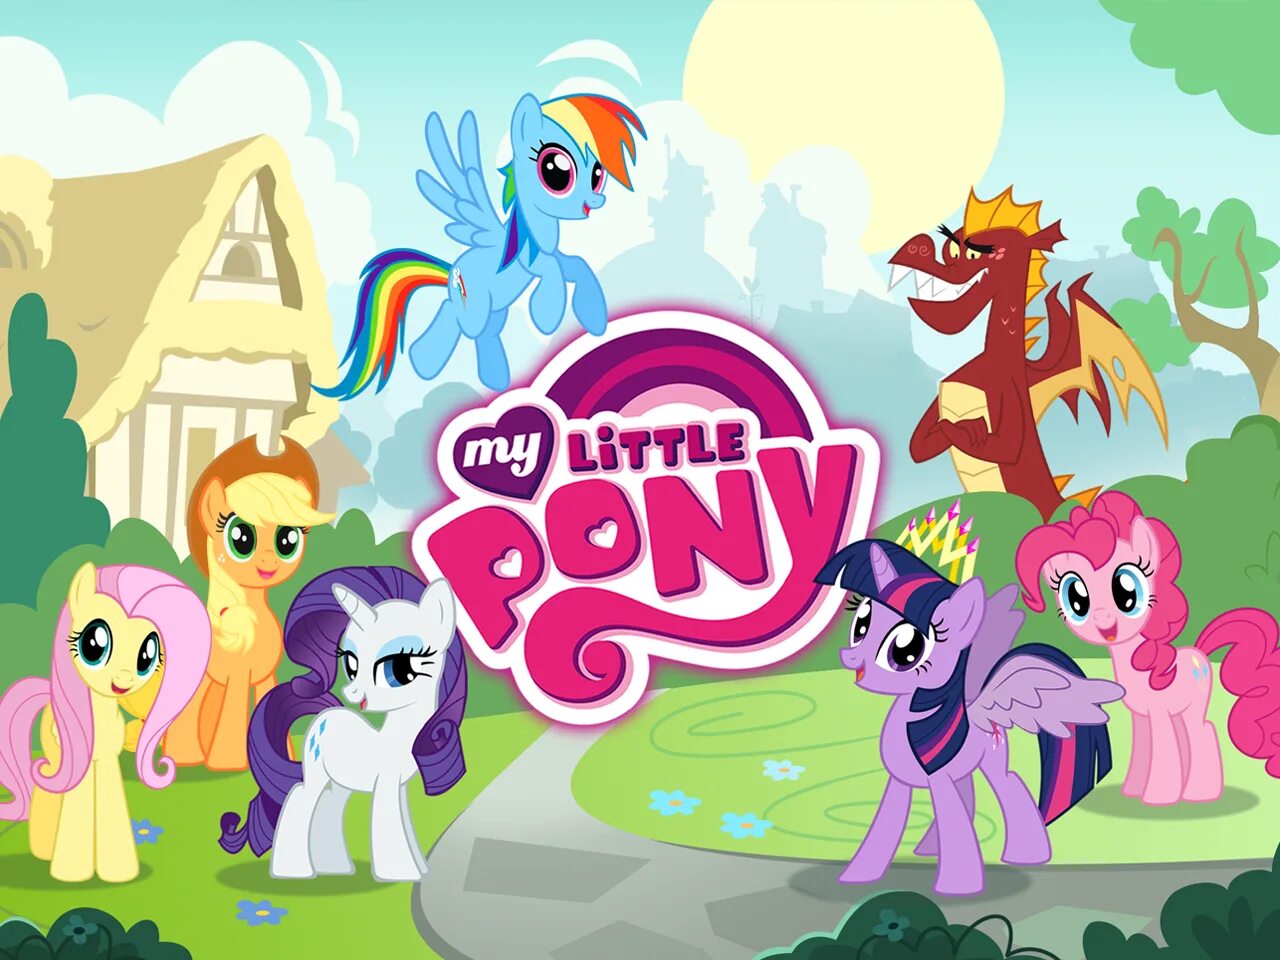 Mine little pony играть. Игры по my little Pony. Игра my little Pony Gameloft. My little Pony Friendship is Magic игра. My little Pony от Gameloft.